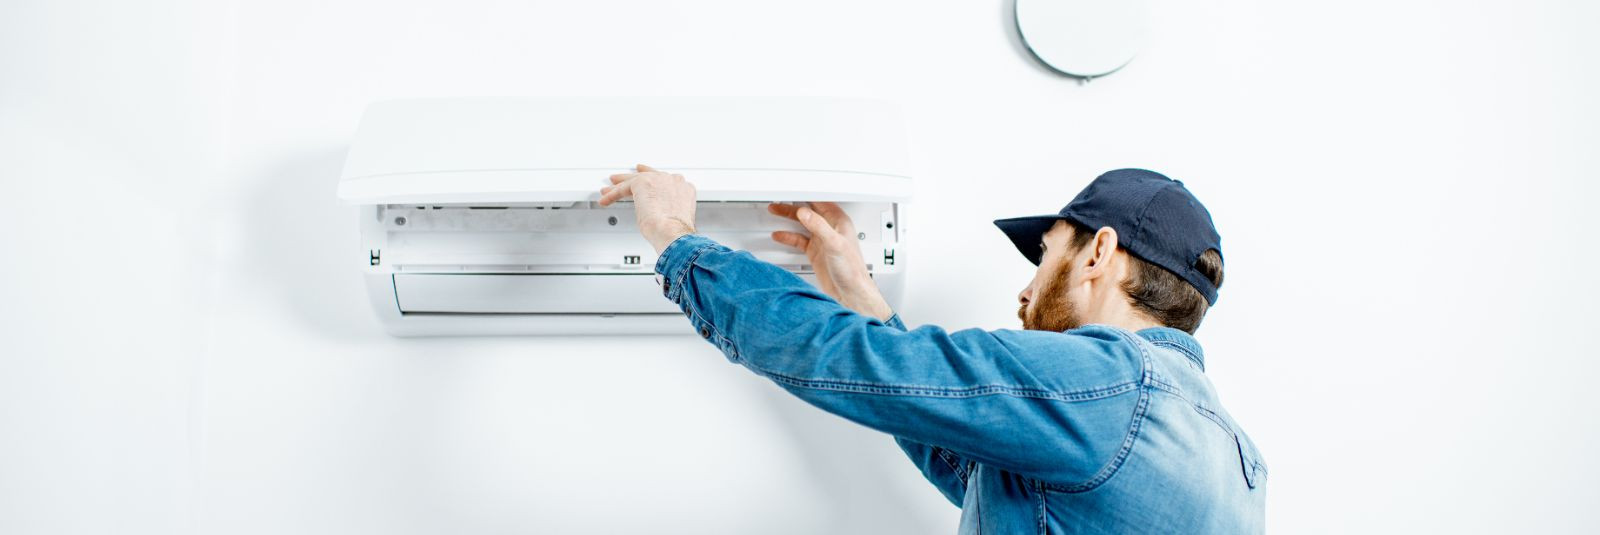 Suvisel ajal võib kuumalaine muuta sisekliima kodudes ja kontorites ebamugavaks ning produktiivsust mõjutavaks. Õnneks pakub Vanikar kvaliteetset kliimaseadmete